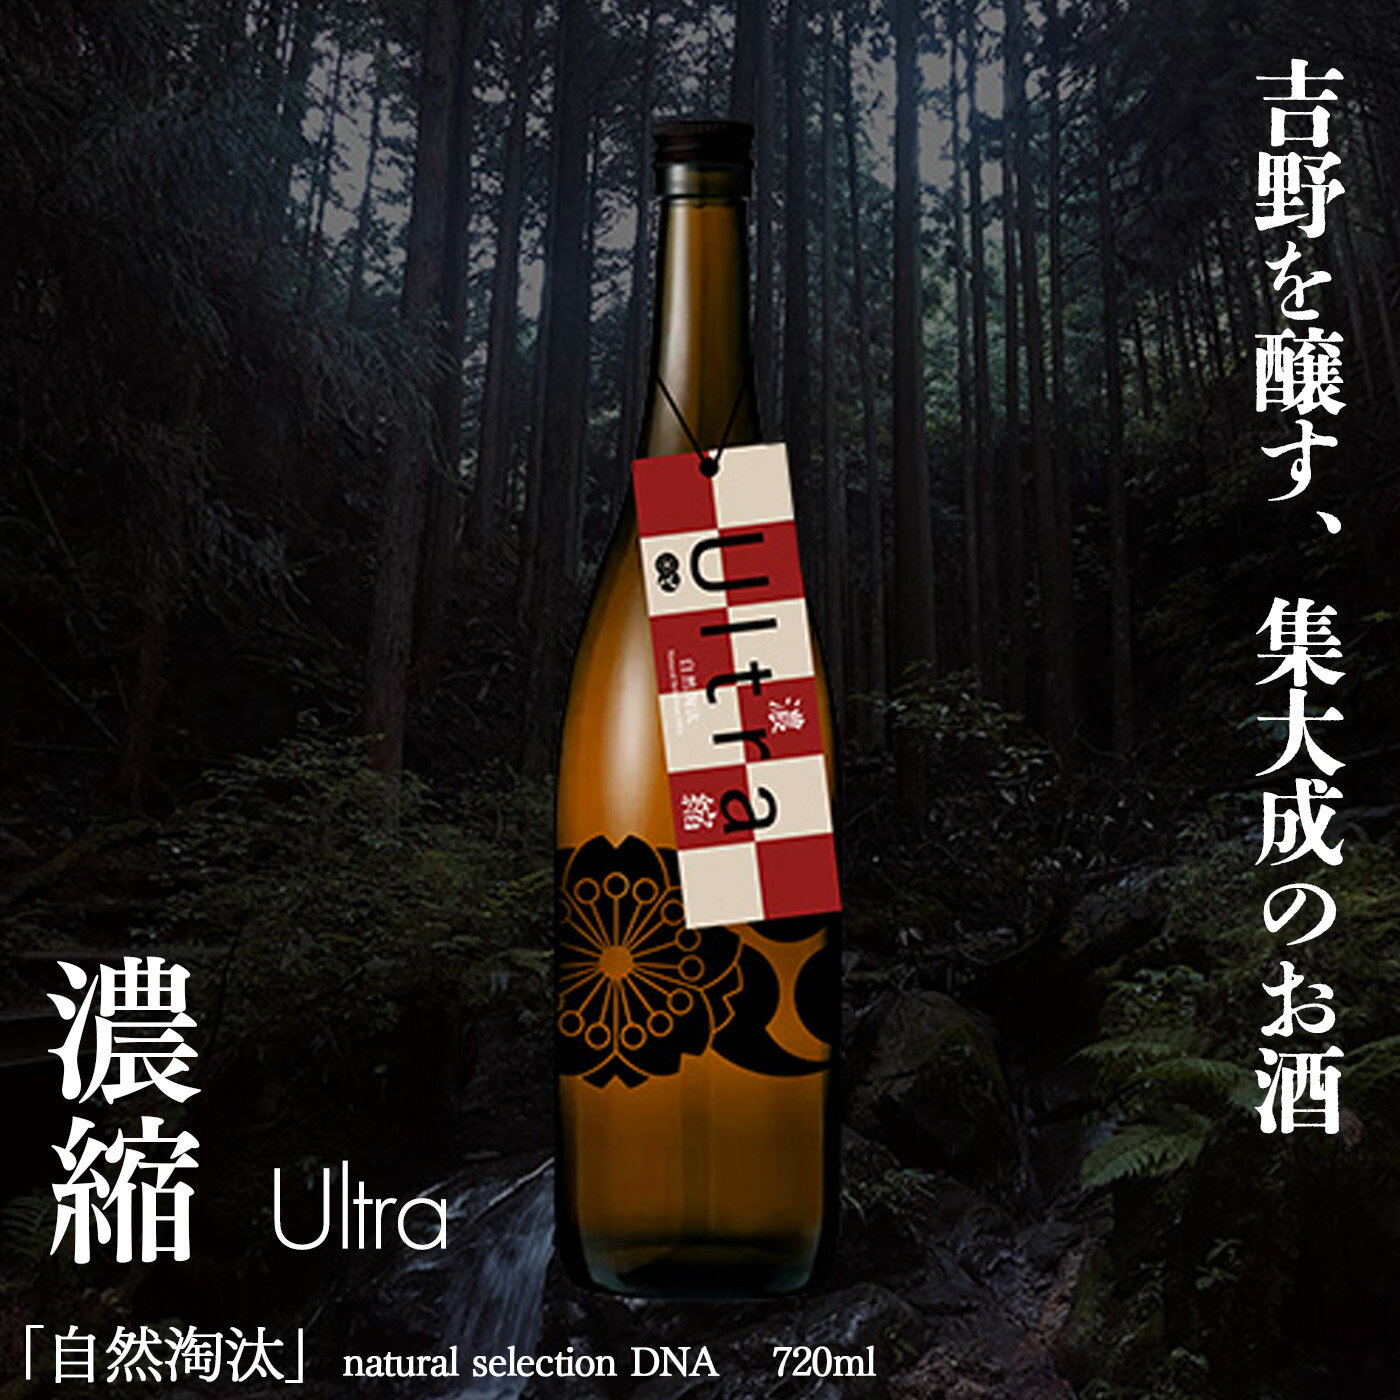 【ふるさと納税】自然淘汰 natural selection DNA Ultra濃縮 日本酒 酒 美吉野酒造 奈良県 吉野町